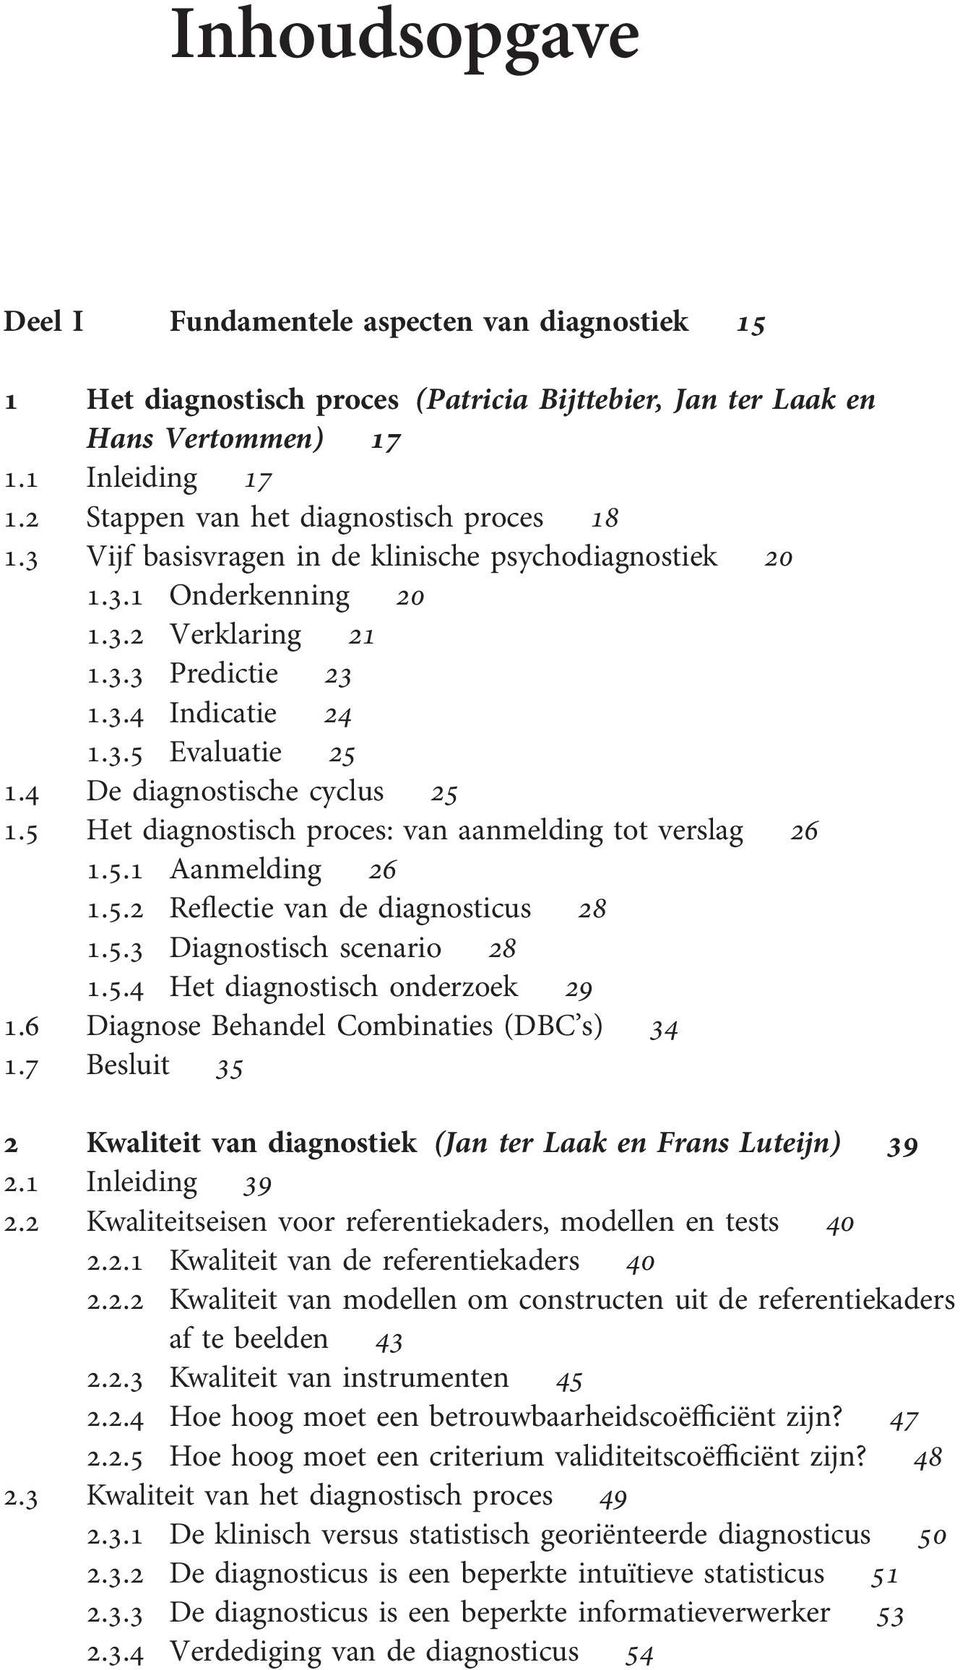 4 De diagnostische cyclus 25 1.5 Het diagnostisch proces: van aanmelding tot verslag 26 1.5.1 Aanmelding 26 1.5.2 Reflectie van de diagnosticus 28 1.5.3 Diagnostisch scenario 28 1.5.4 Het diagnostisch onderzoek 29 1.